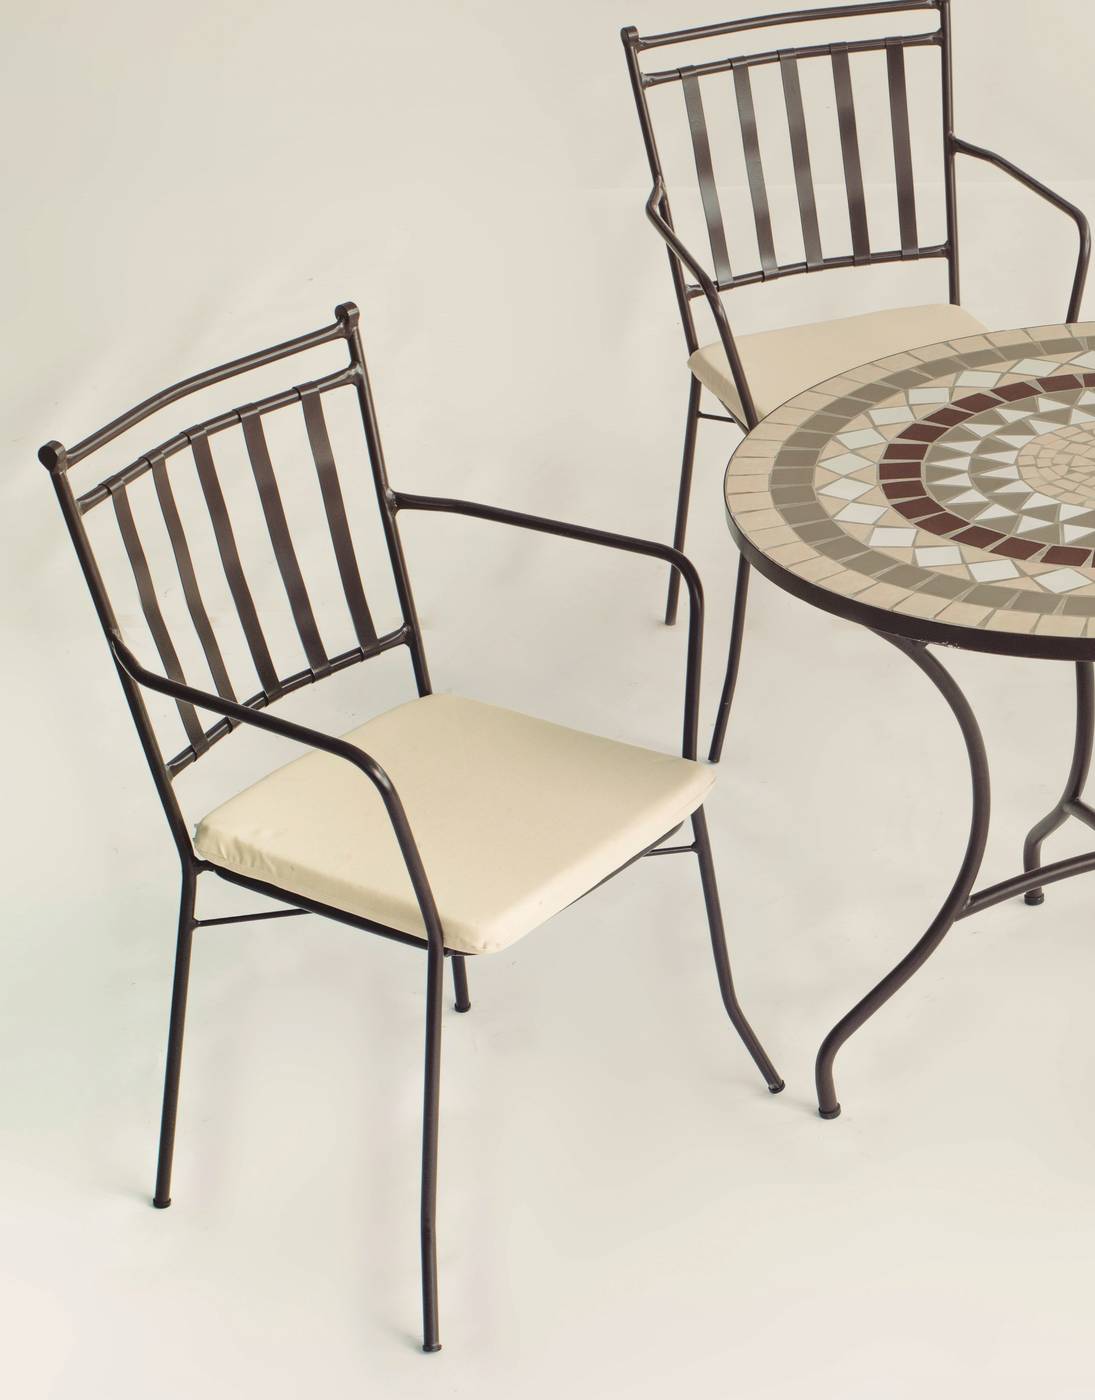 Conjunto Mosaico Malaya-Shifa - Conjunto de forja color bronce: mesa con tablero mosaico de 150 cm + 4 sillones con cojines asiento.<br/><br/><b>OFERTA VÁLIDA HASTA EL 31 DE MAYO O FIN DE EXISTENCIAS</b>.